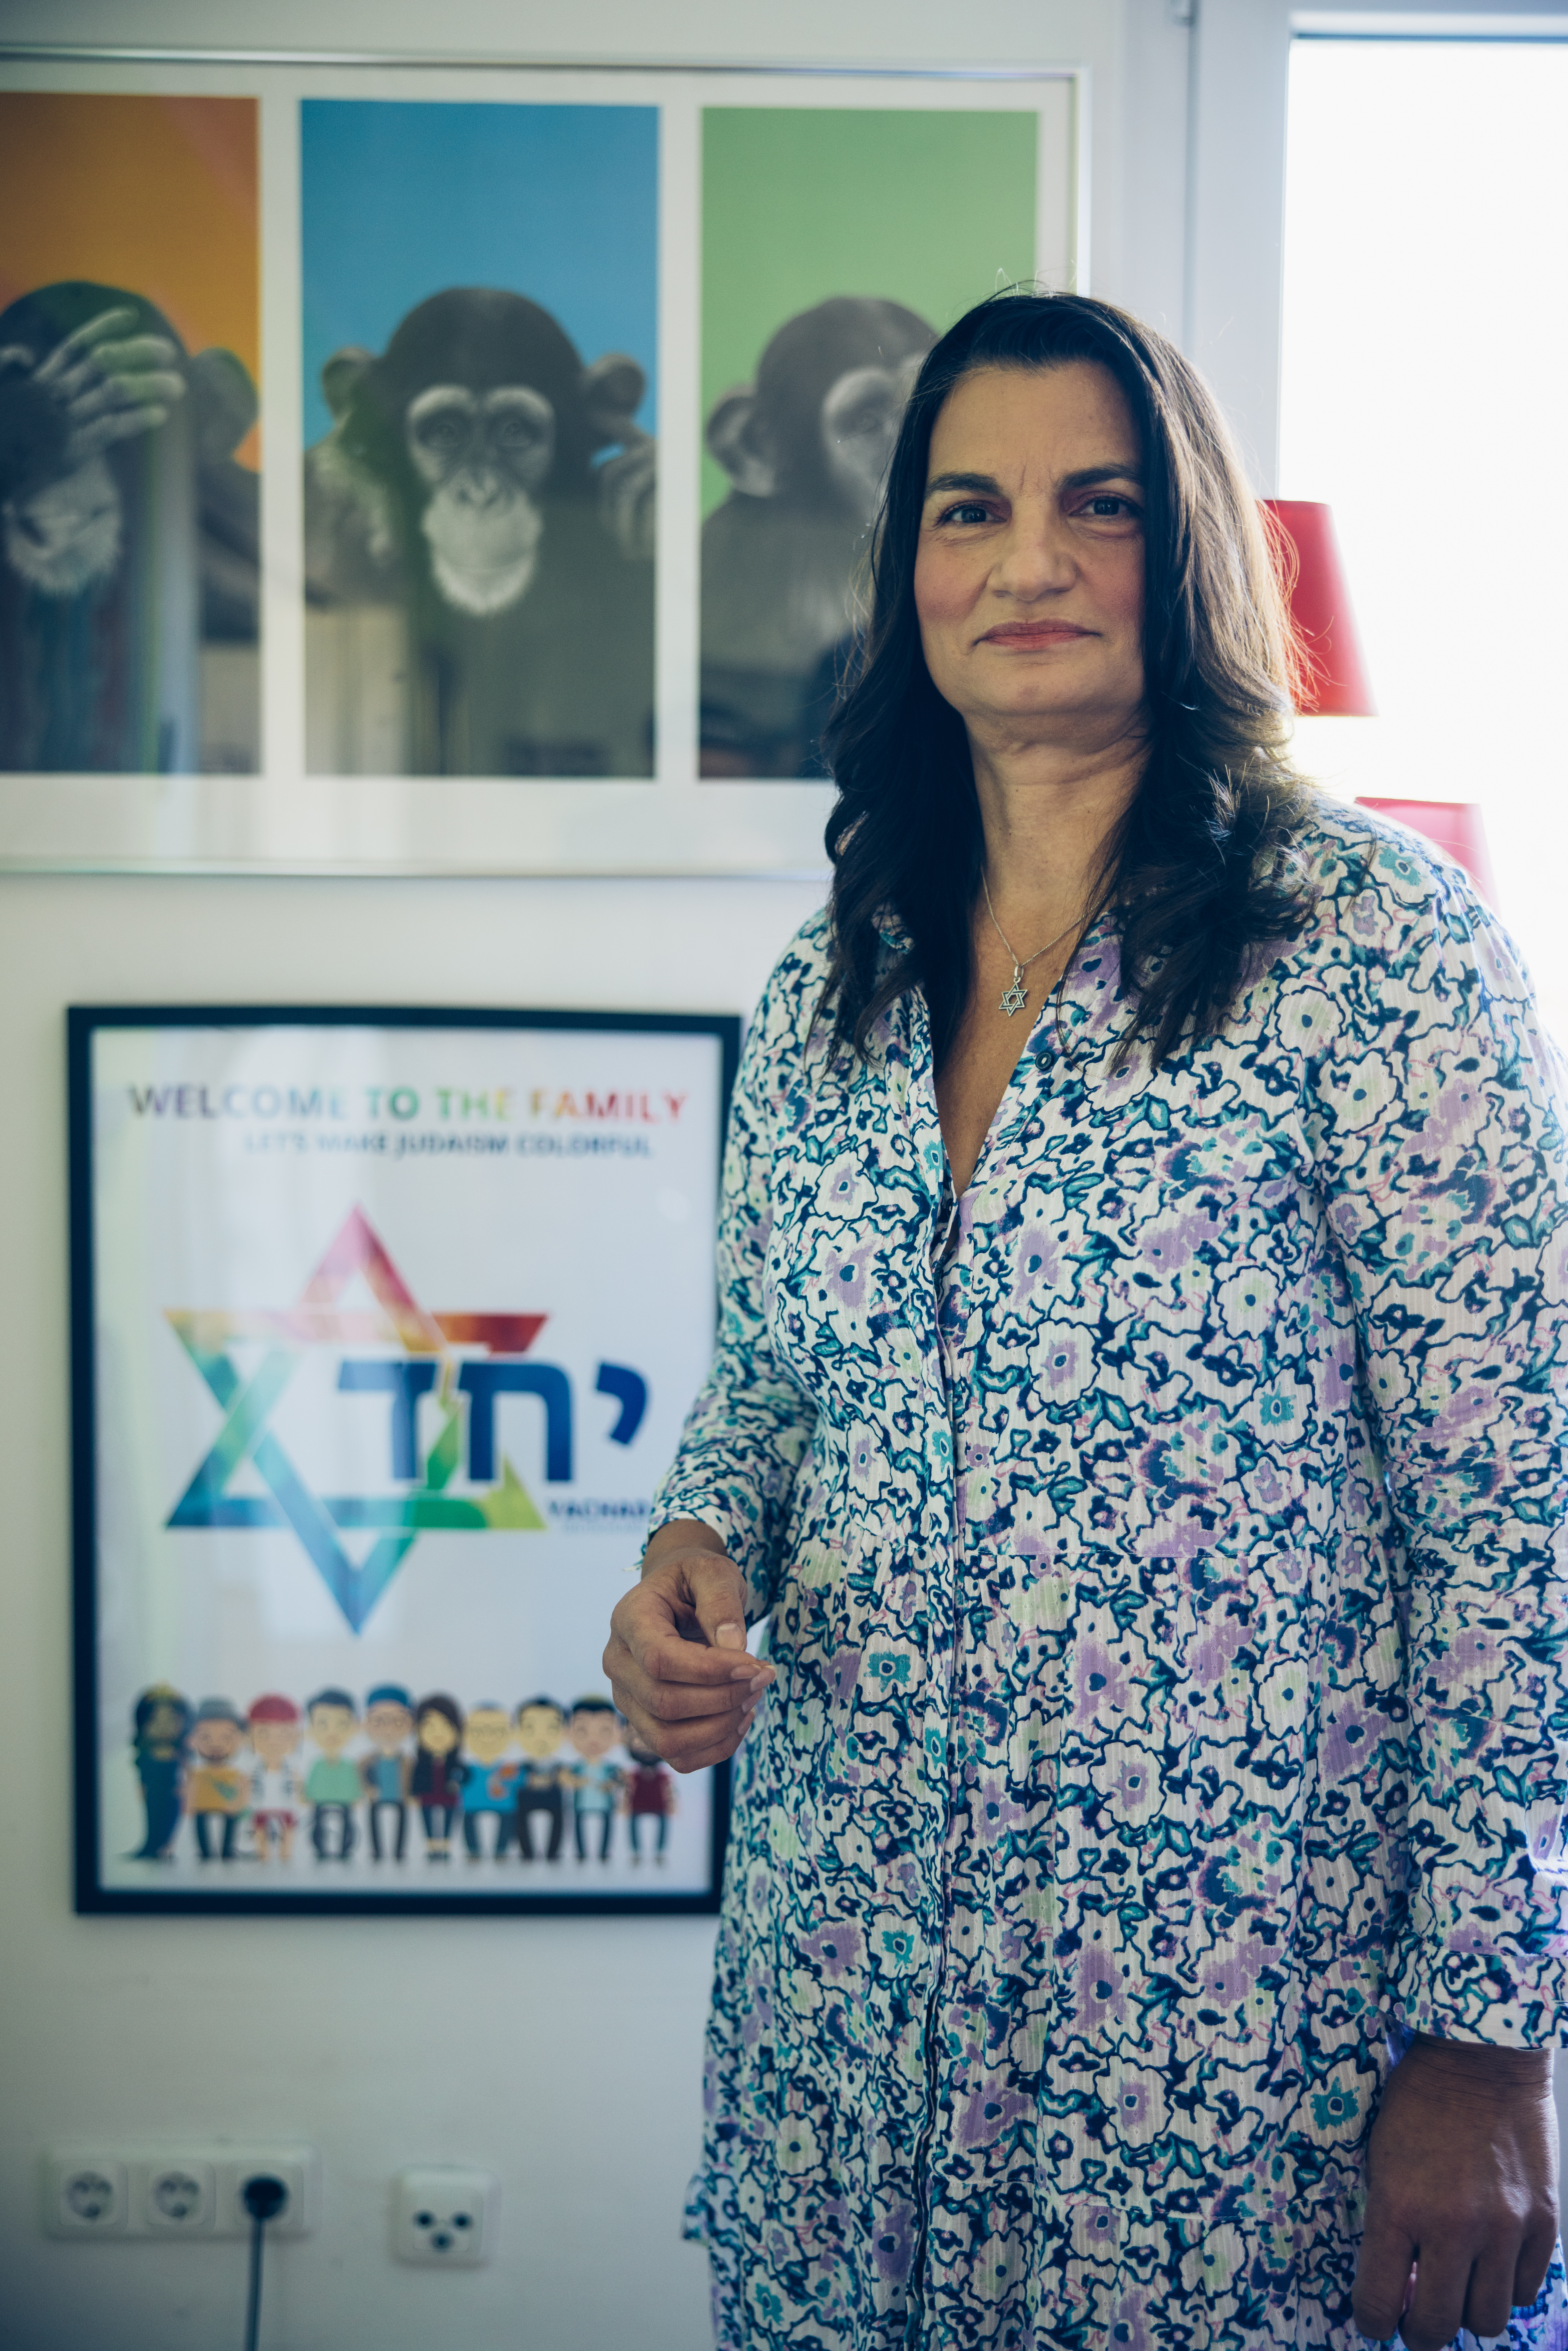 Eine Frau mit langen schwarzen Haaren und buntem Kleid steht vor einem regebogenbunten Plakat des queer-jüdischen Vereins Yachad e.V.